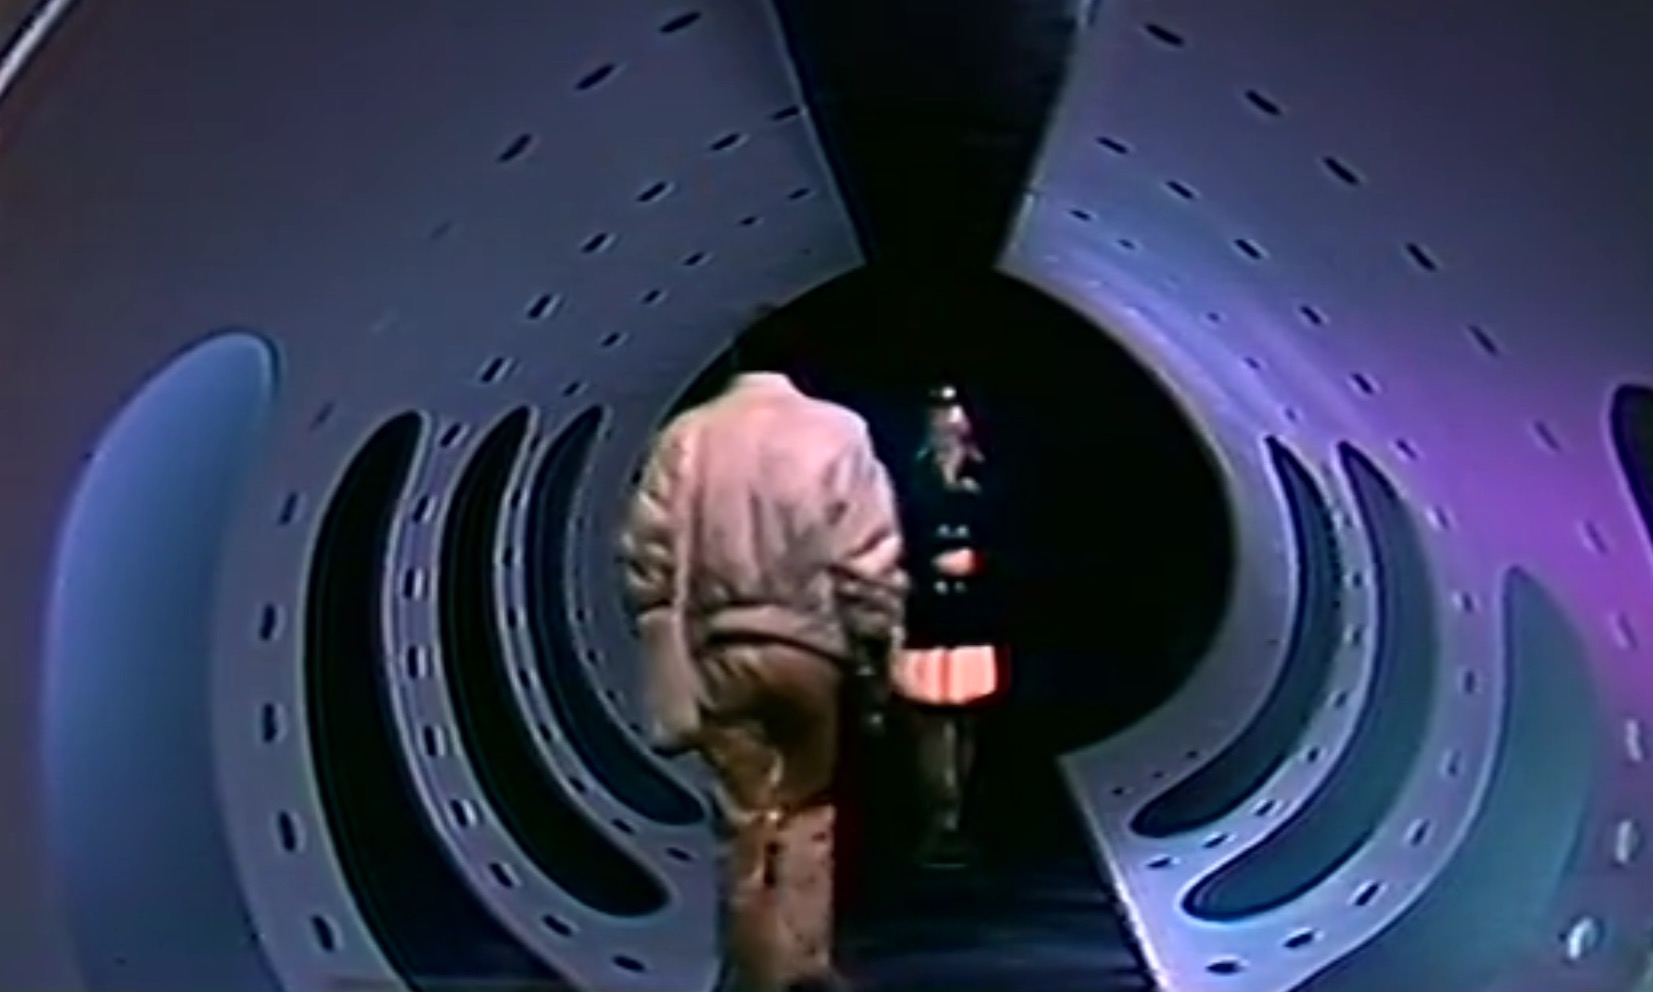 Vozvrashchenie so zvyozd (1989) Screenshot 5 